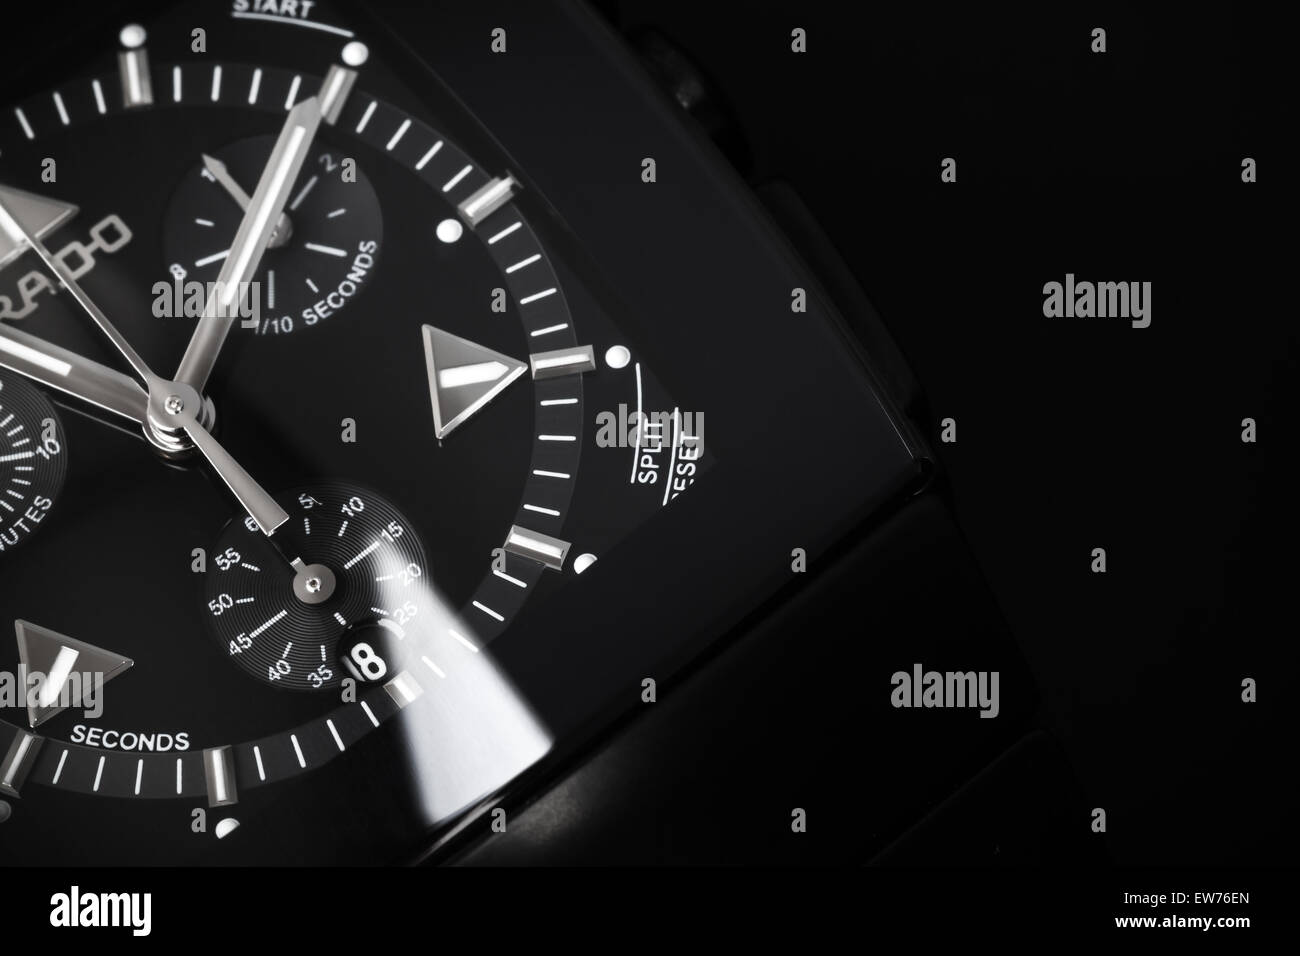 Saint-pétersbourg, Russie - le 18 juin 2015 : Rado Sintra Chrono Montre chronographe pour hommes, fait de la céramique high-tech noire Banque D'Images